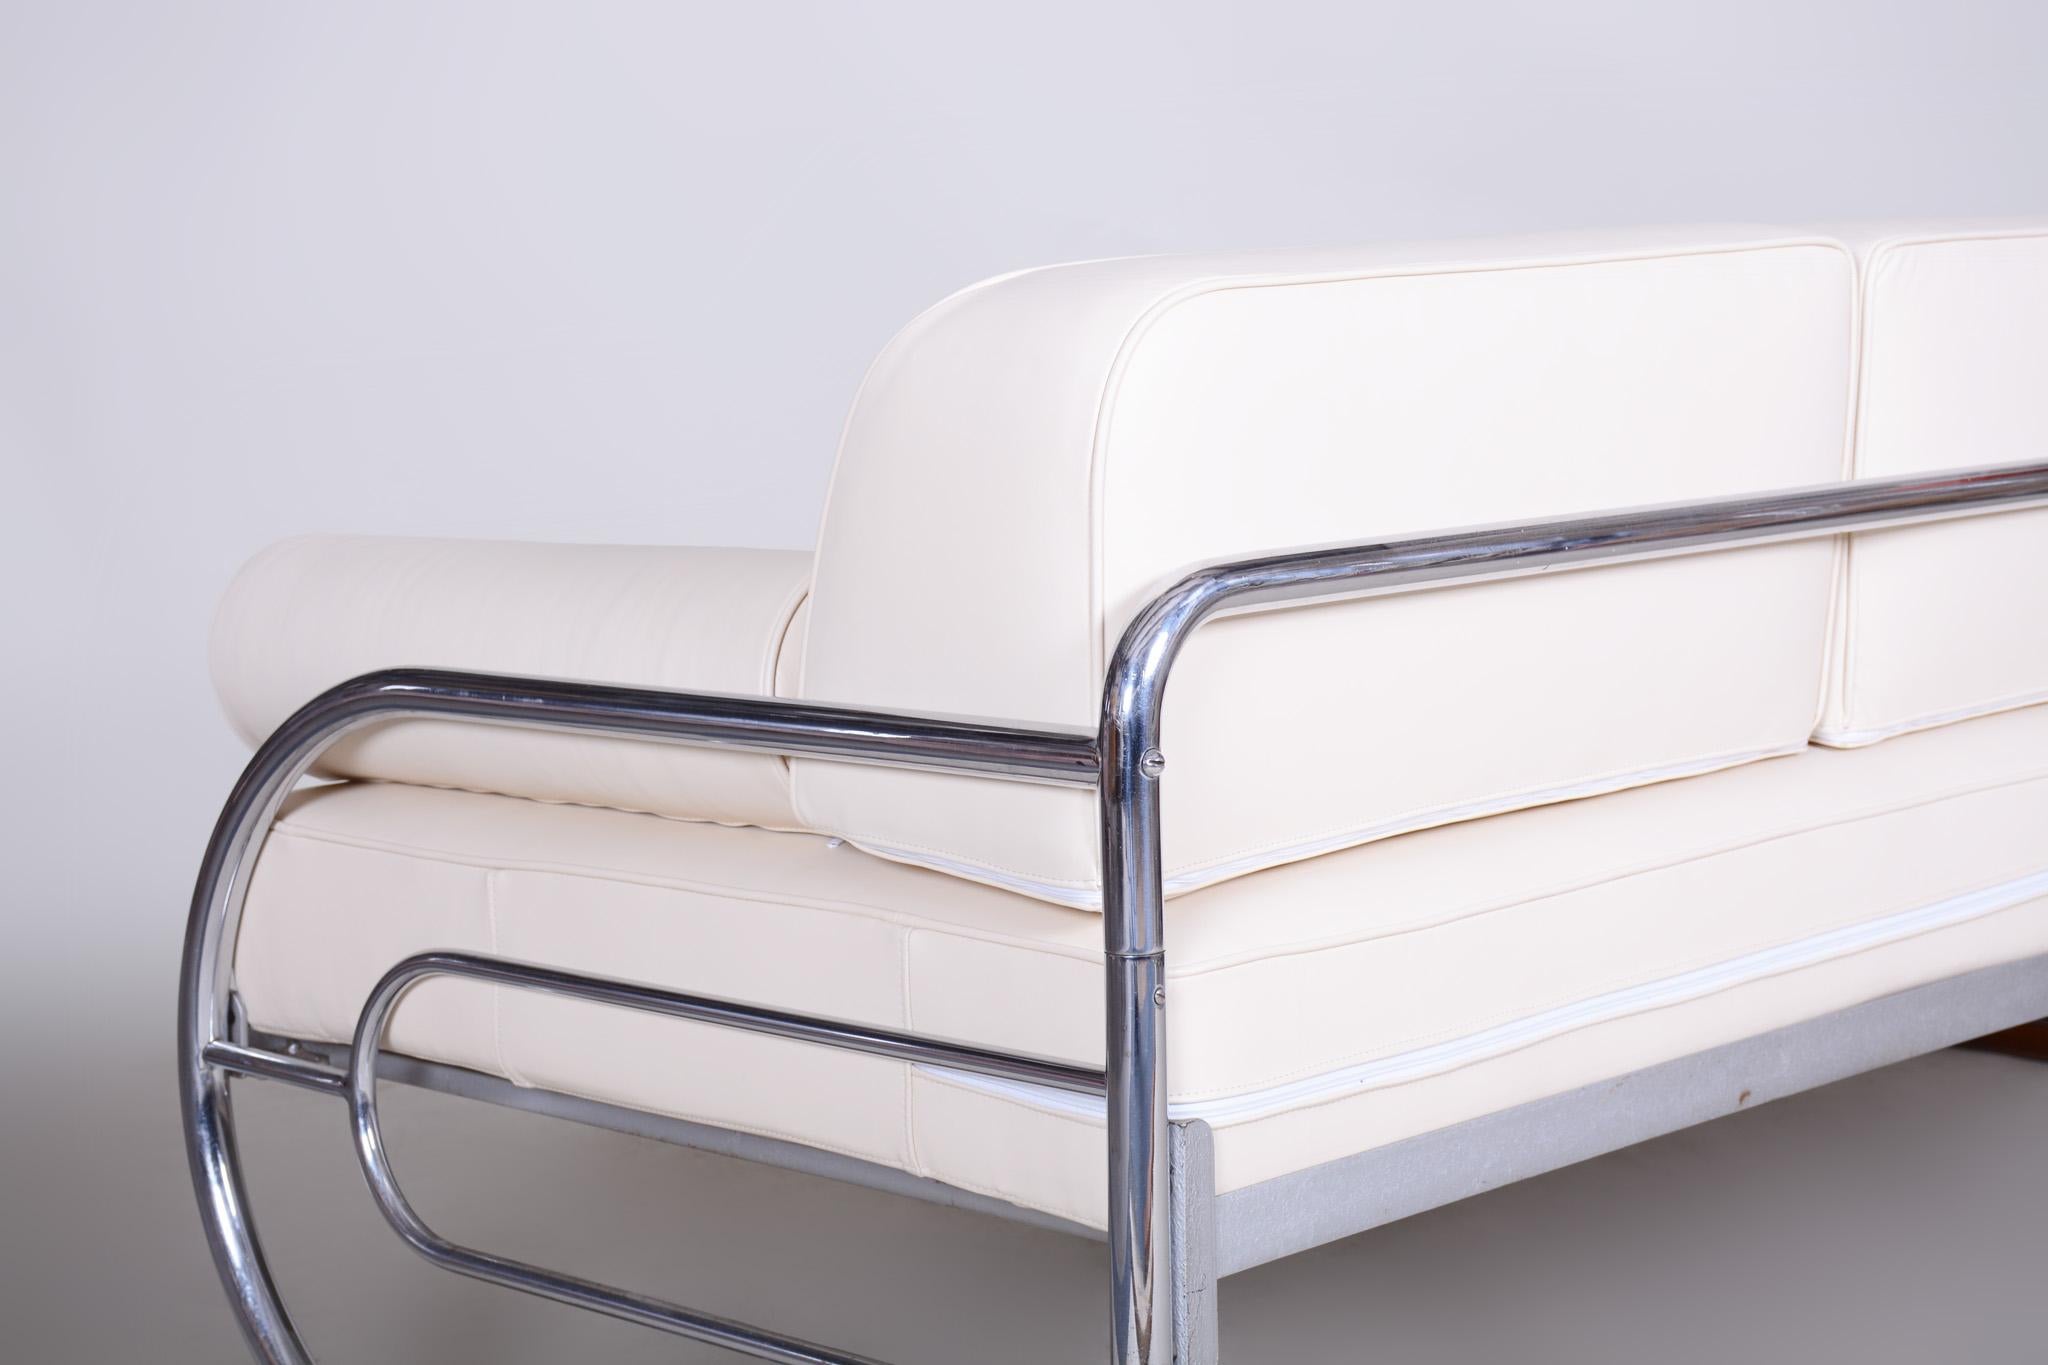 Sofa im Bauhaus-Stil mit einem Gestell aus lackiertem Holz und verchromtem Stahlrohr.
Hergestellt von Robert Slezák in den 1930er Jahren.
Das verchromte Stahlrohr ist in perfektem Originalzustand.
Gepolstert mit hochwertigem weißem